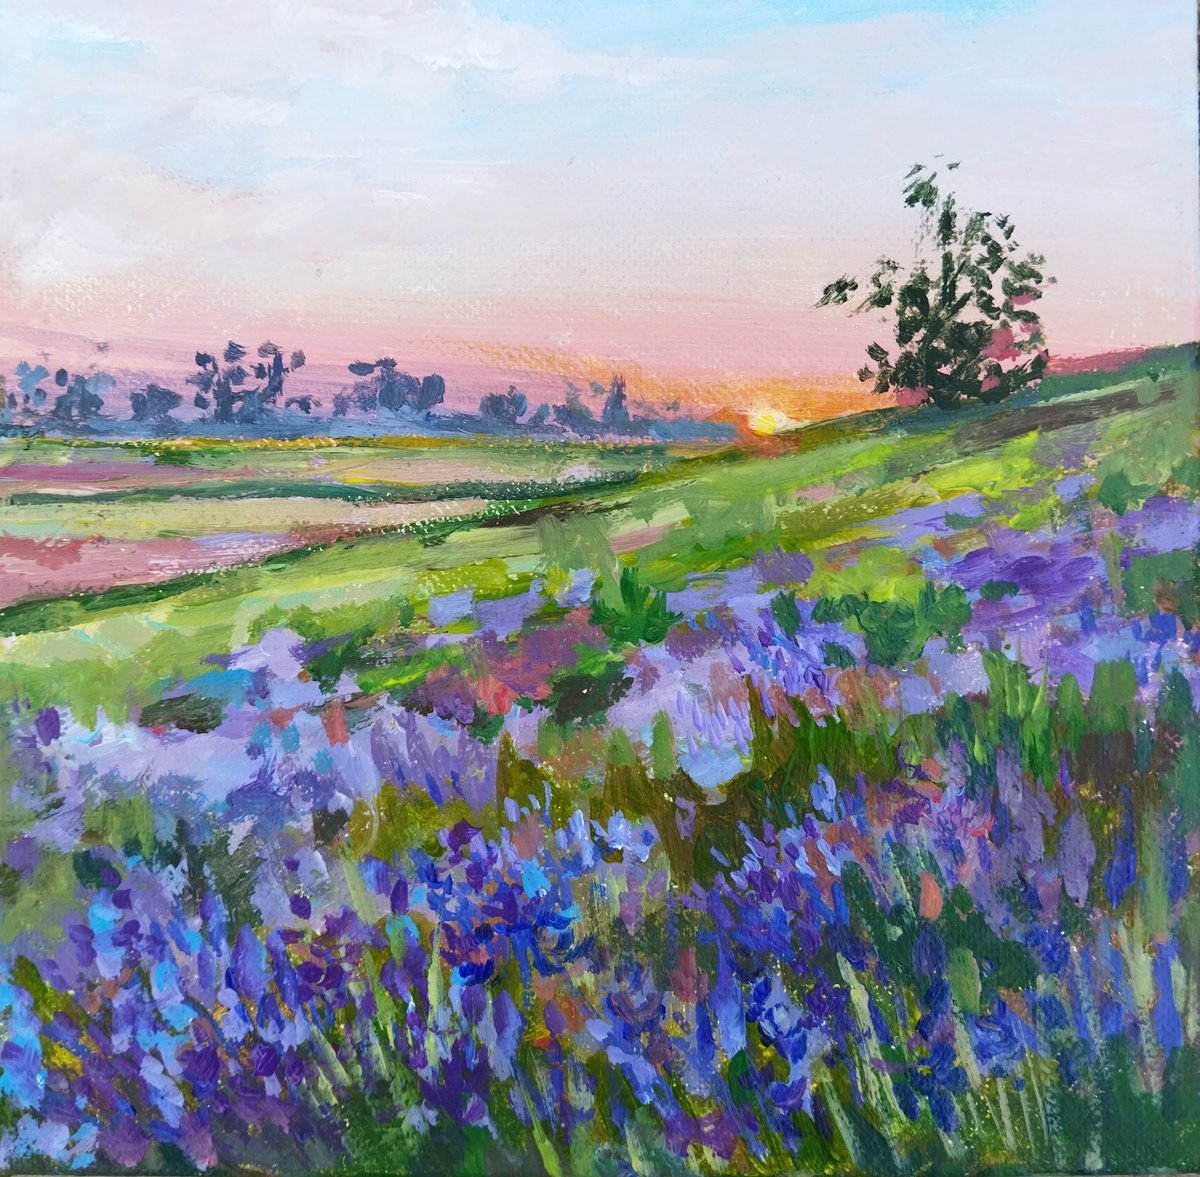 Sunset landscape by Ann Krasikova